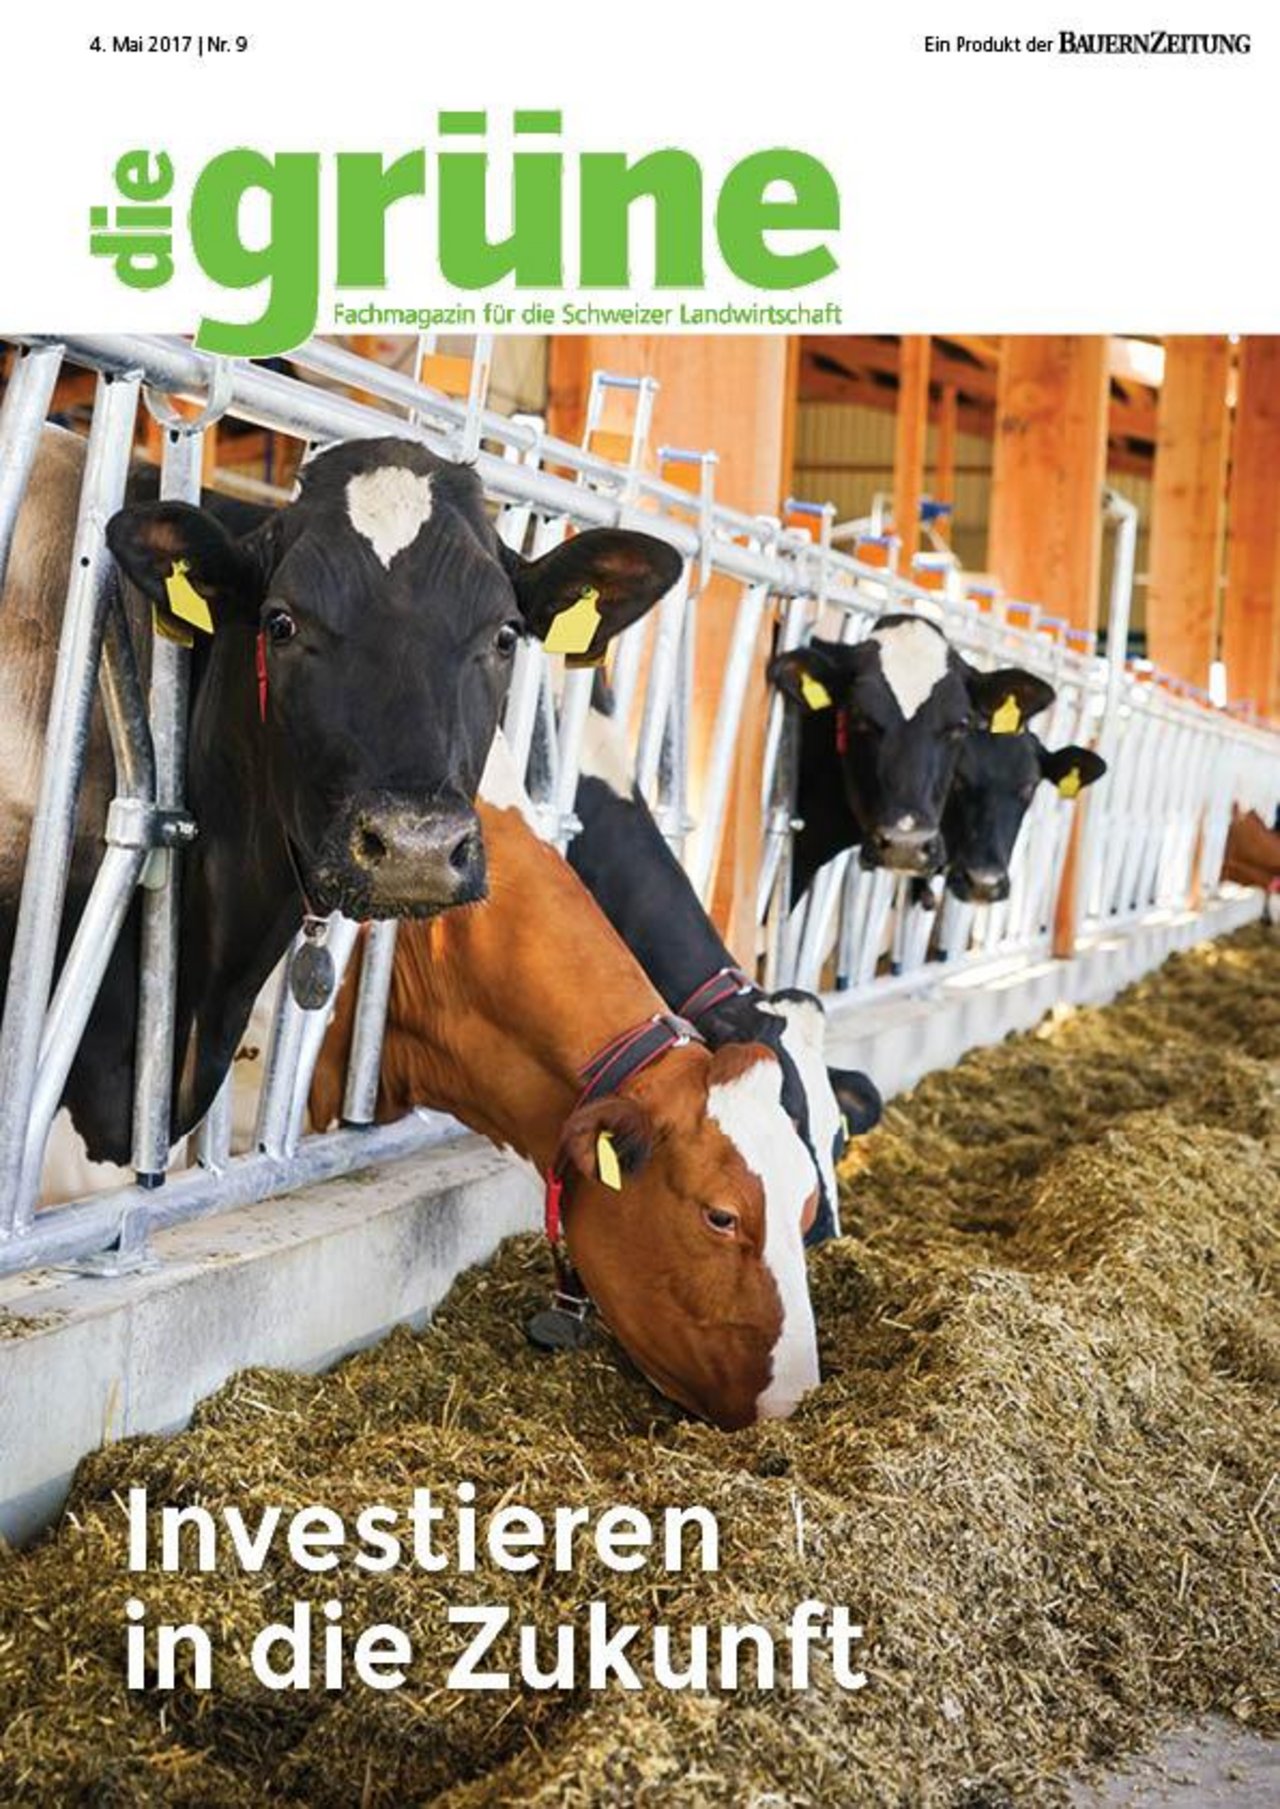 Die neue Serie der Zeitschrift die grüne widmet sich der Finanzierung in der Landwirtschaft. (Bild die grüne)